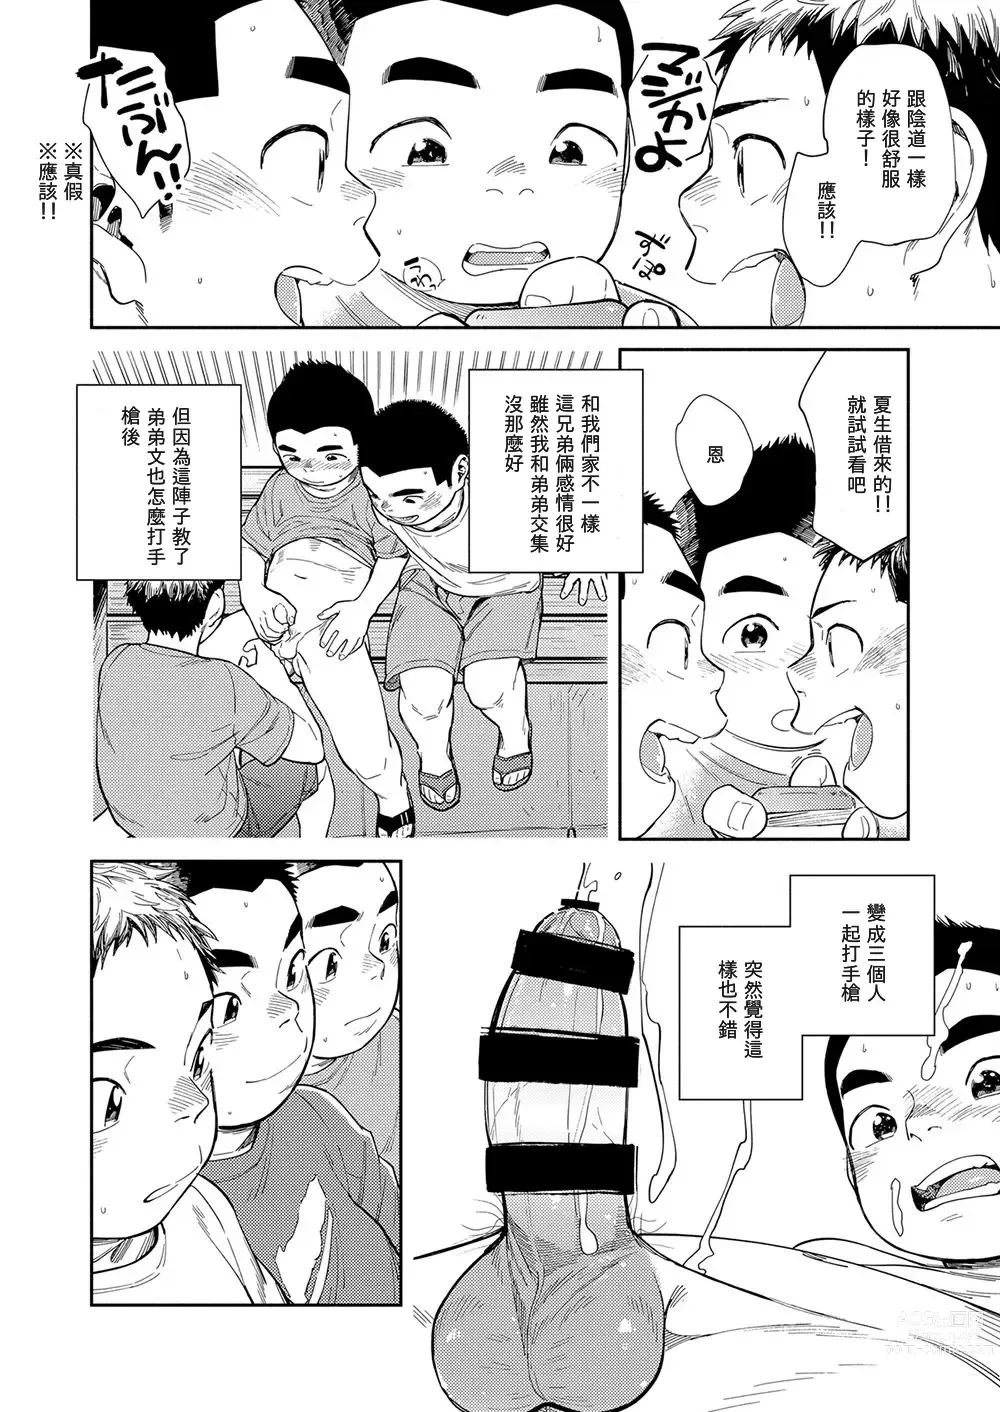 Page 28 of doujinshi Manga Shounen Zoom Vol. 29